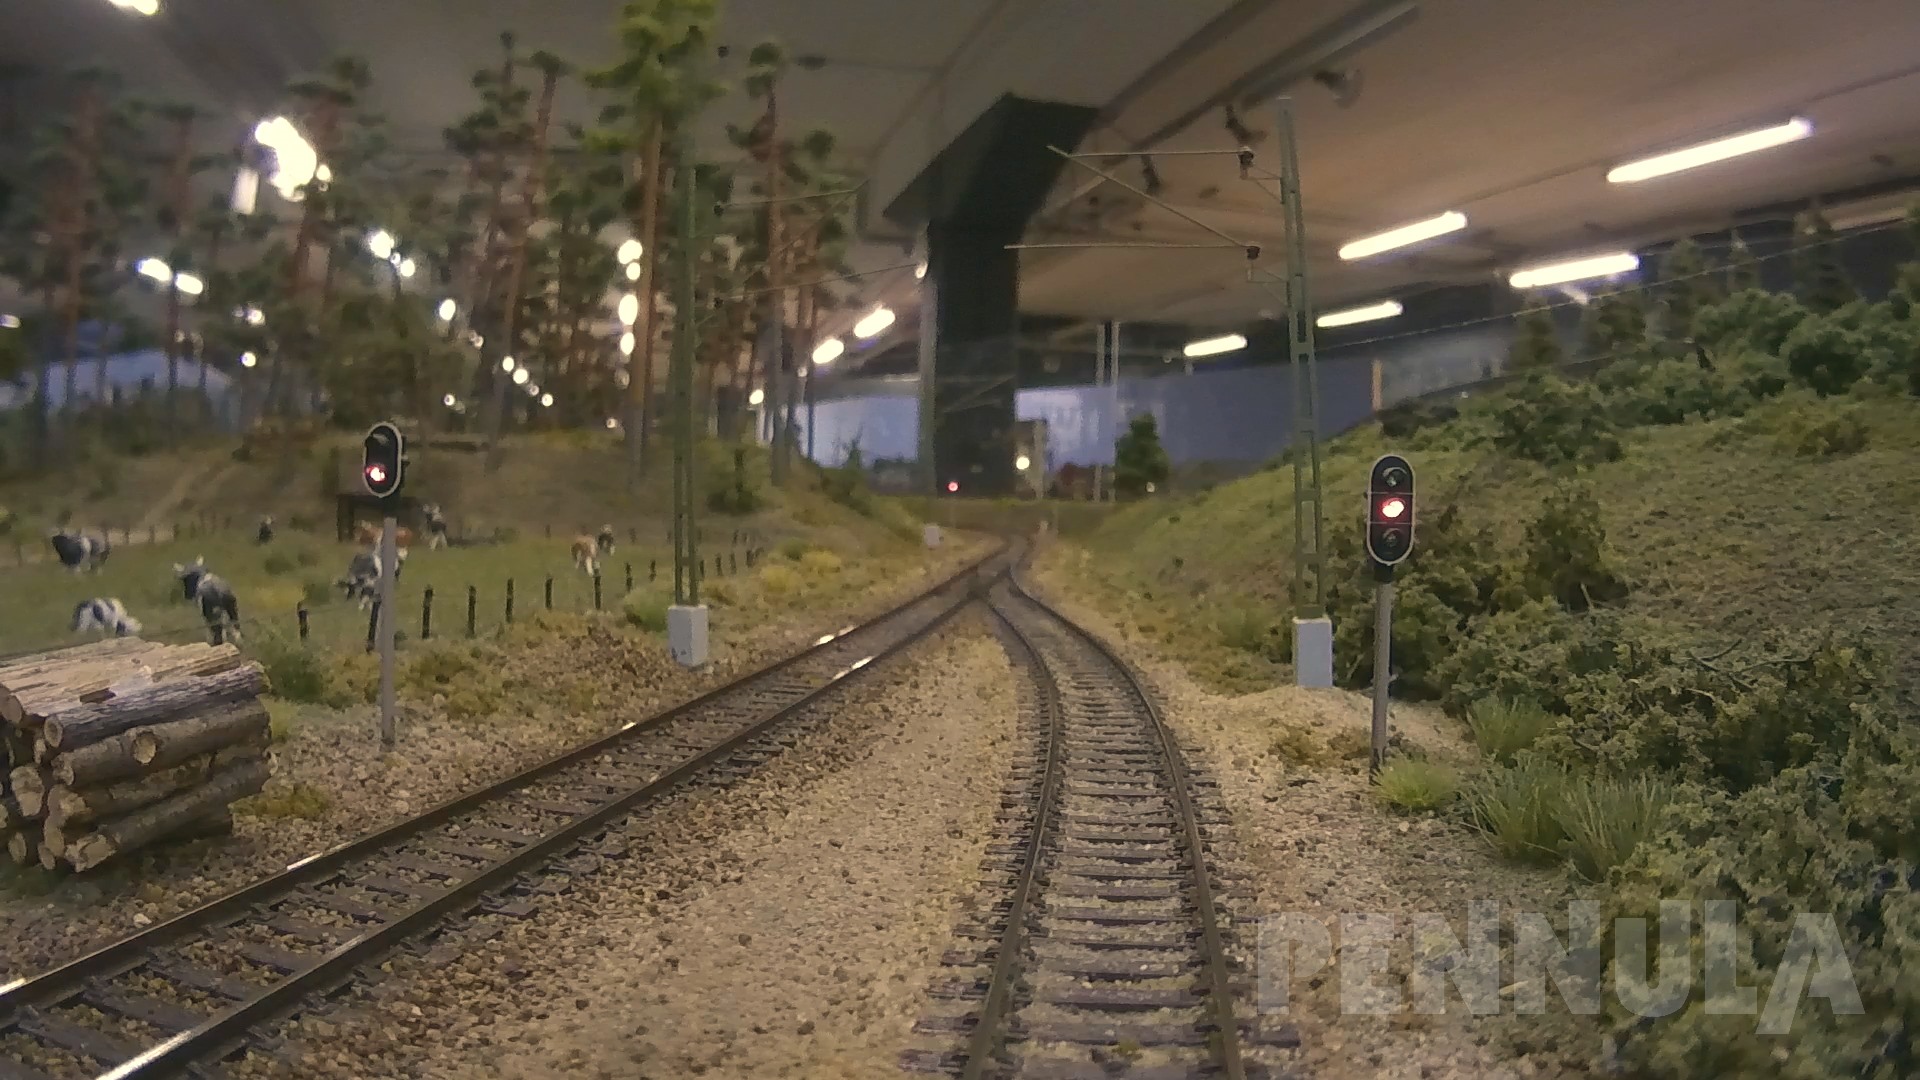 Miniaturwelt Modelljärnväg Hässleholm - Die größte Modellbahnausstellung in Schweden